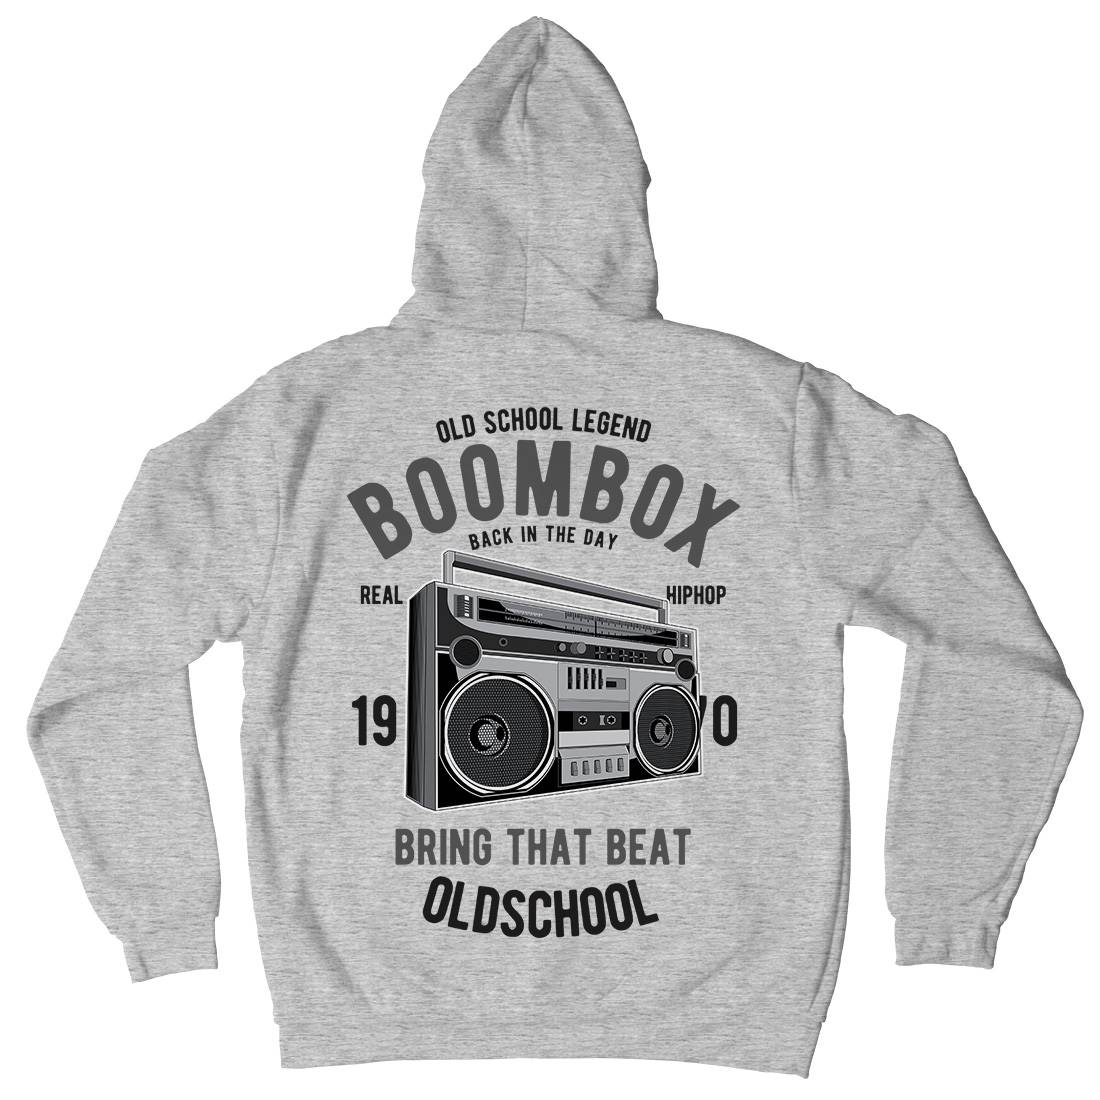 Boombox Kids Crew Neck Hoodie Music C319